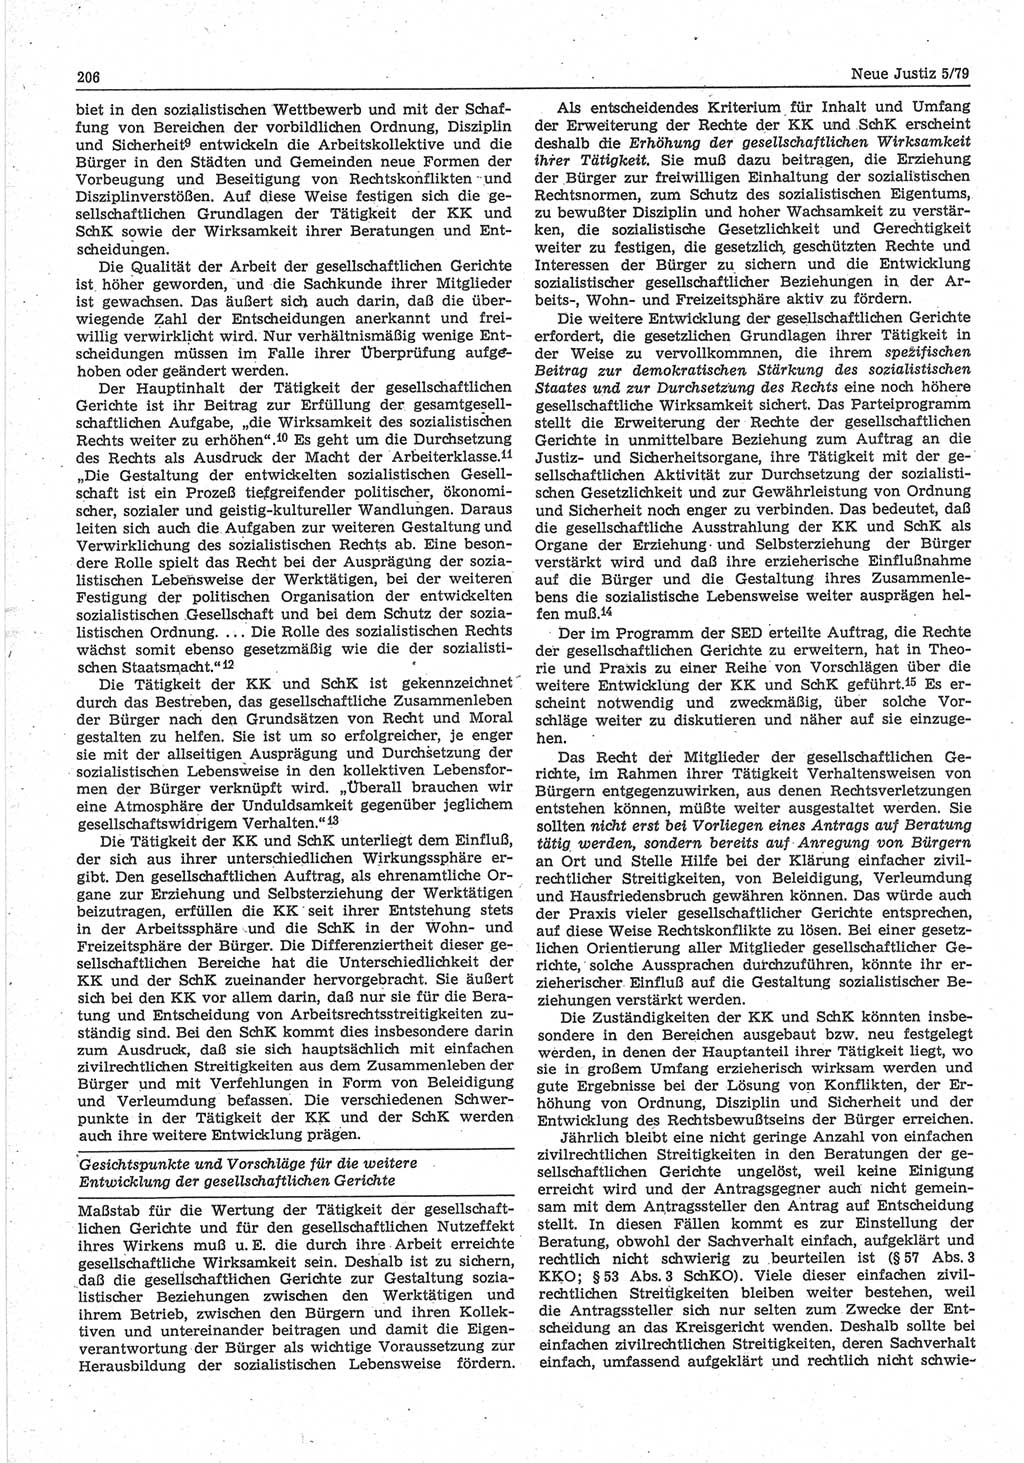 Neue Justiz (NJ), Zeitschrift für sozialistisches Recht und Gesetzlichkeit [Deutsche Demokratische Republik (DDR)], 33. Jahrgang 1979, Seite 206 (NJ DDR 1979, S. 206)